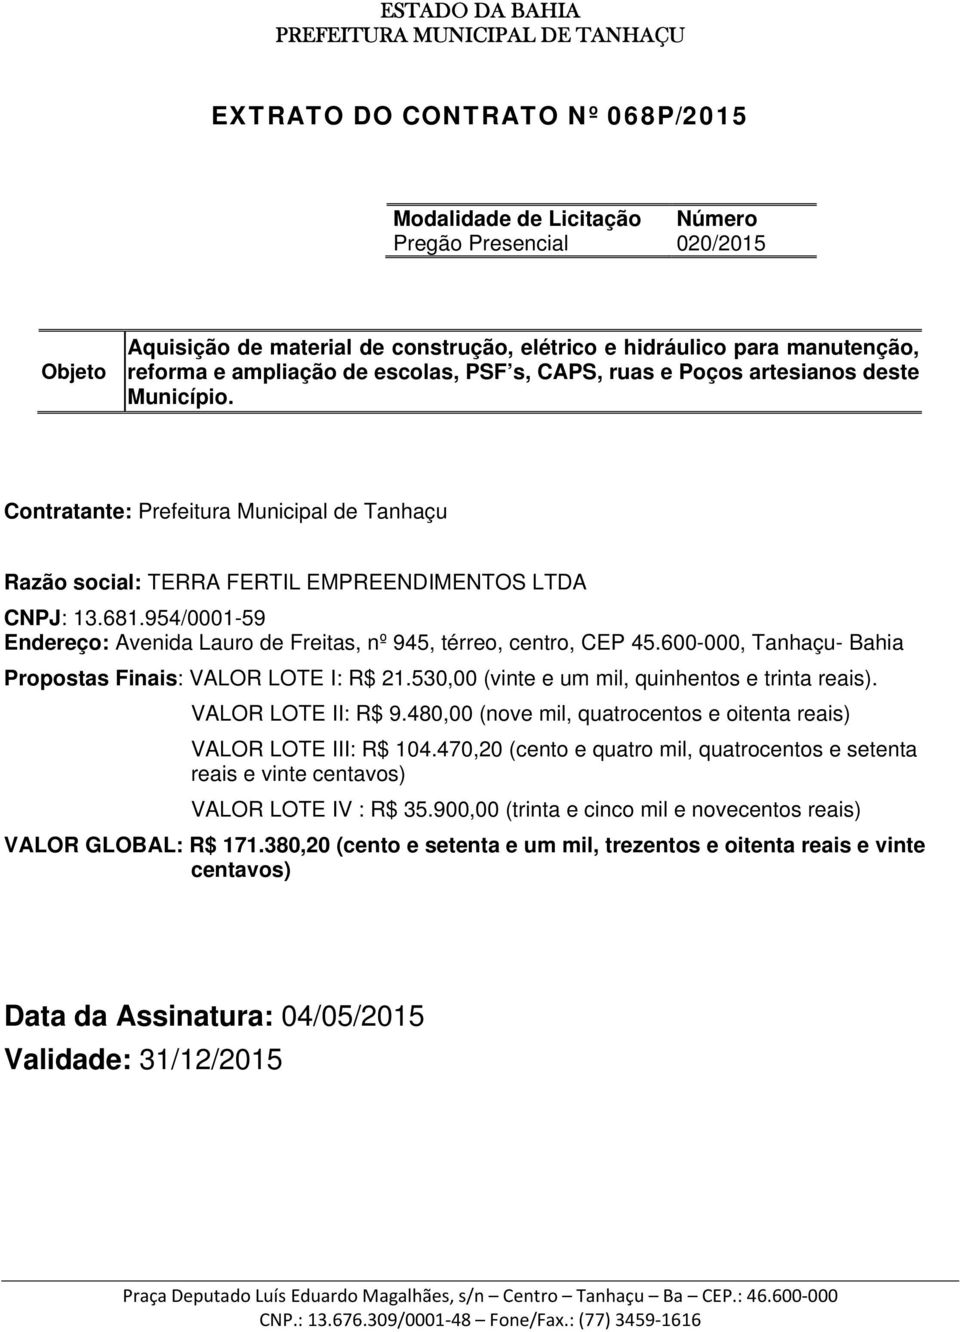 600-000, Tanhaçu- Bahia Propostas Finais: VALOR LOTE I: R$ 21.530,00 (vinte e um mil, quinhentos e trinta reais). VALOR LOTE II: R$ 9.